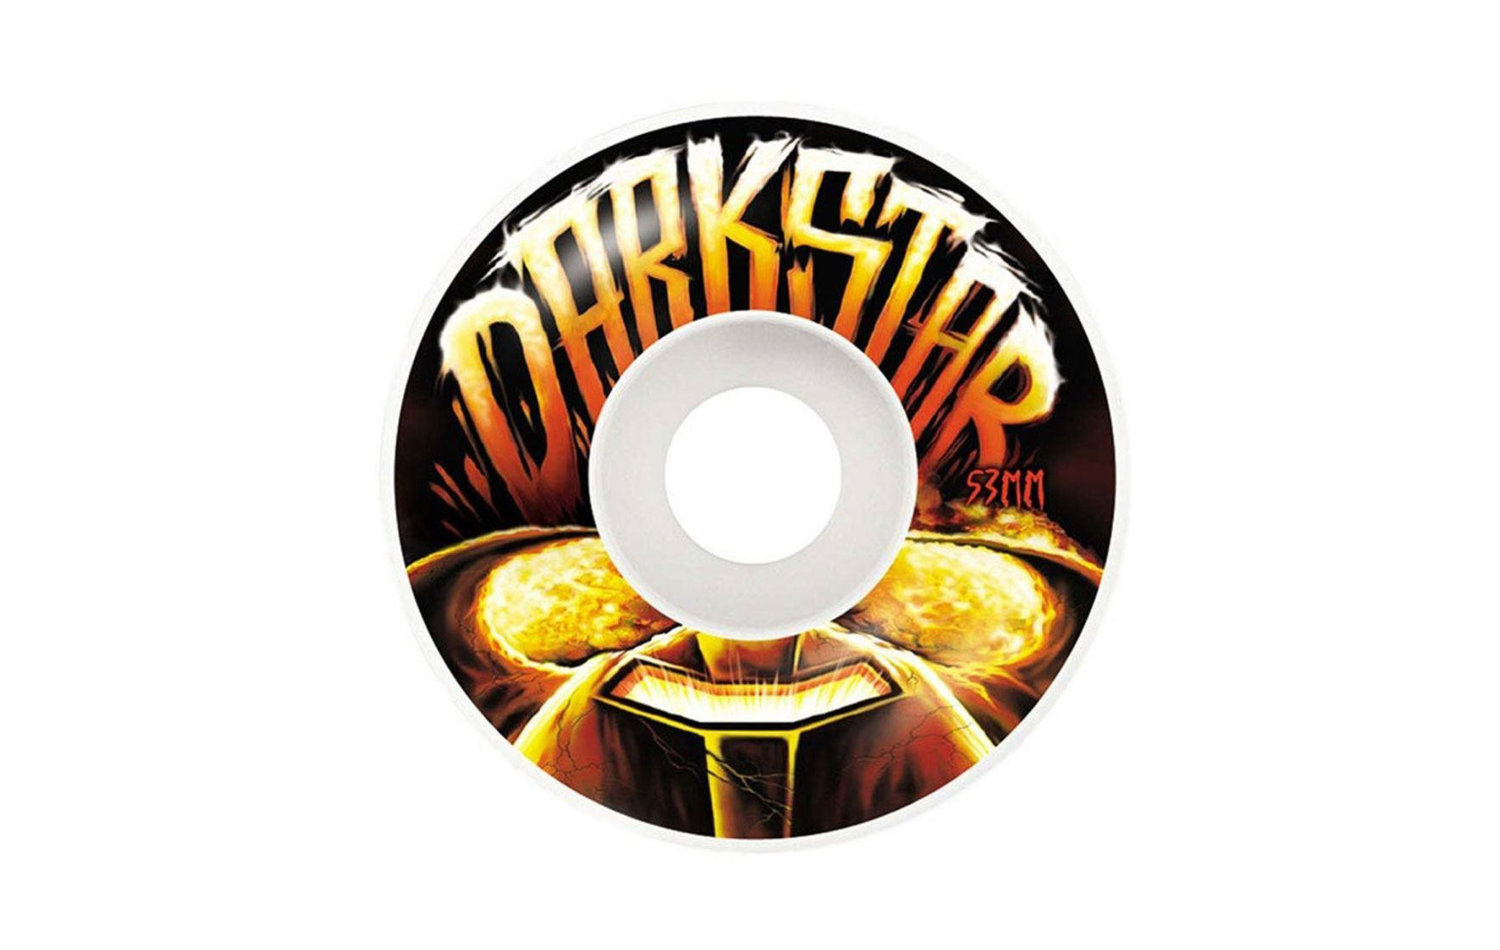 Darkstar Blast Wheels 53mm (10112307)